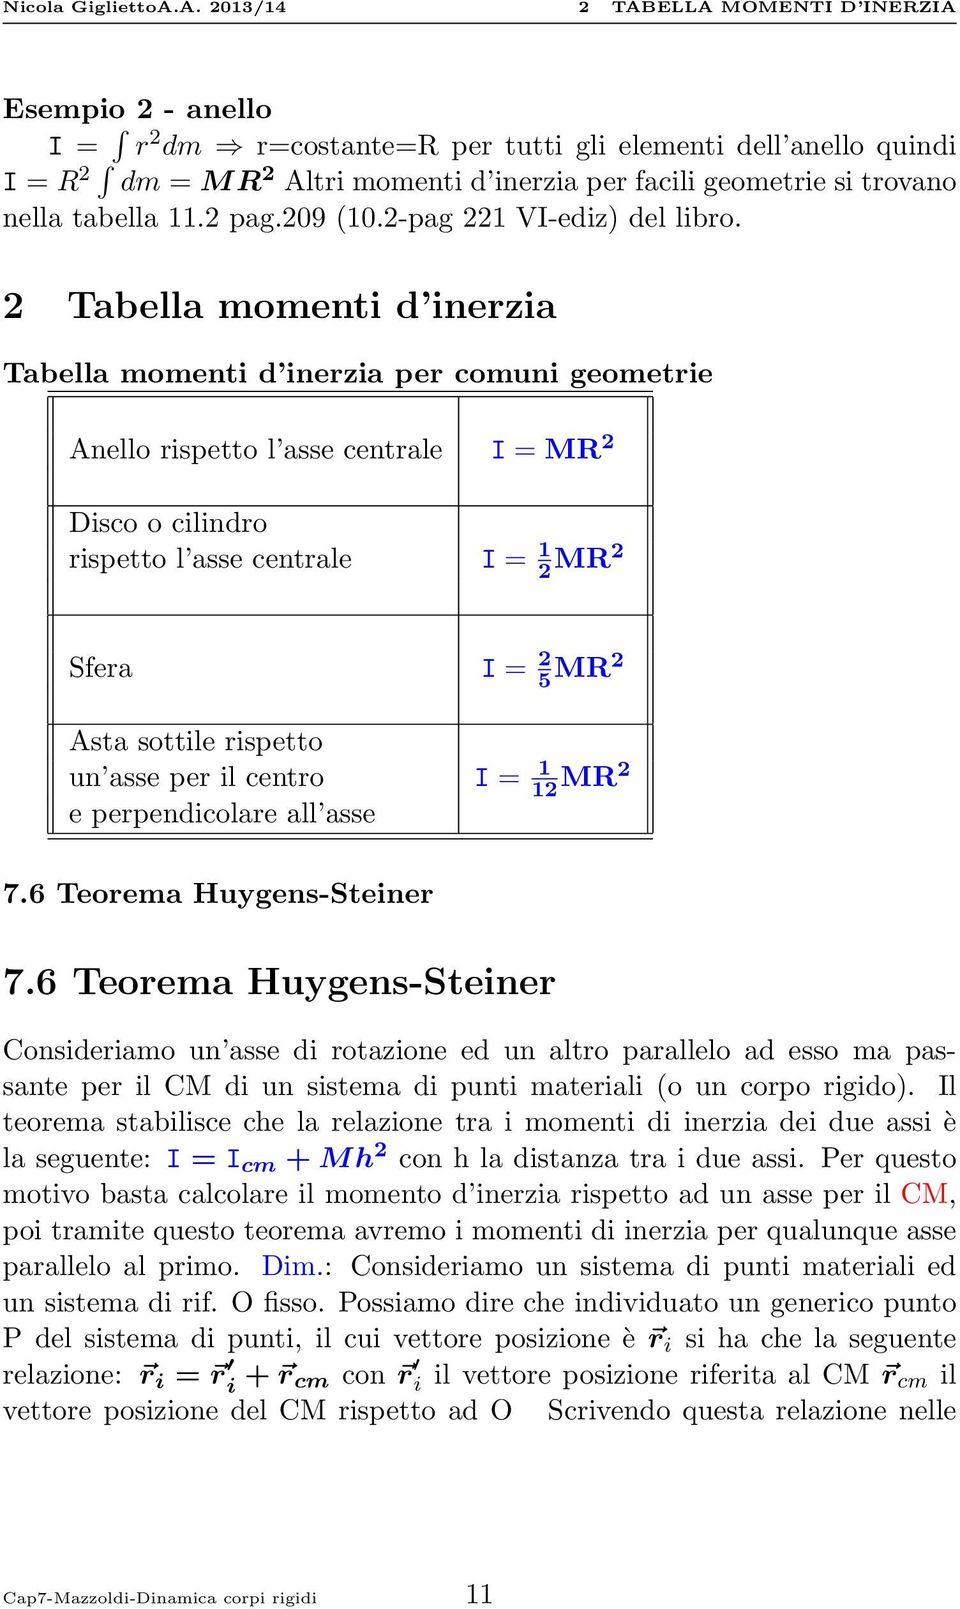 2 Tabella momenti d inerzia Tabella momenti d inerzia per comuni geometrie Anello rispetto l asse centrale I = MR 2 Disco o cilindro rispetto l asse centrale I = 1 2 MR2 Sfera I = 2 5 MR2 Asta